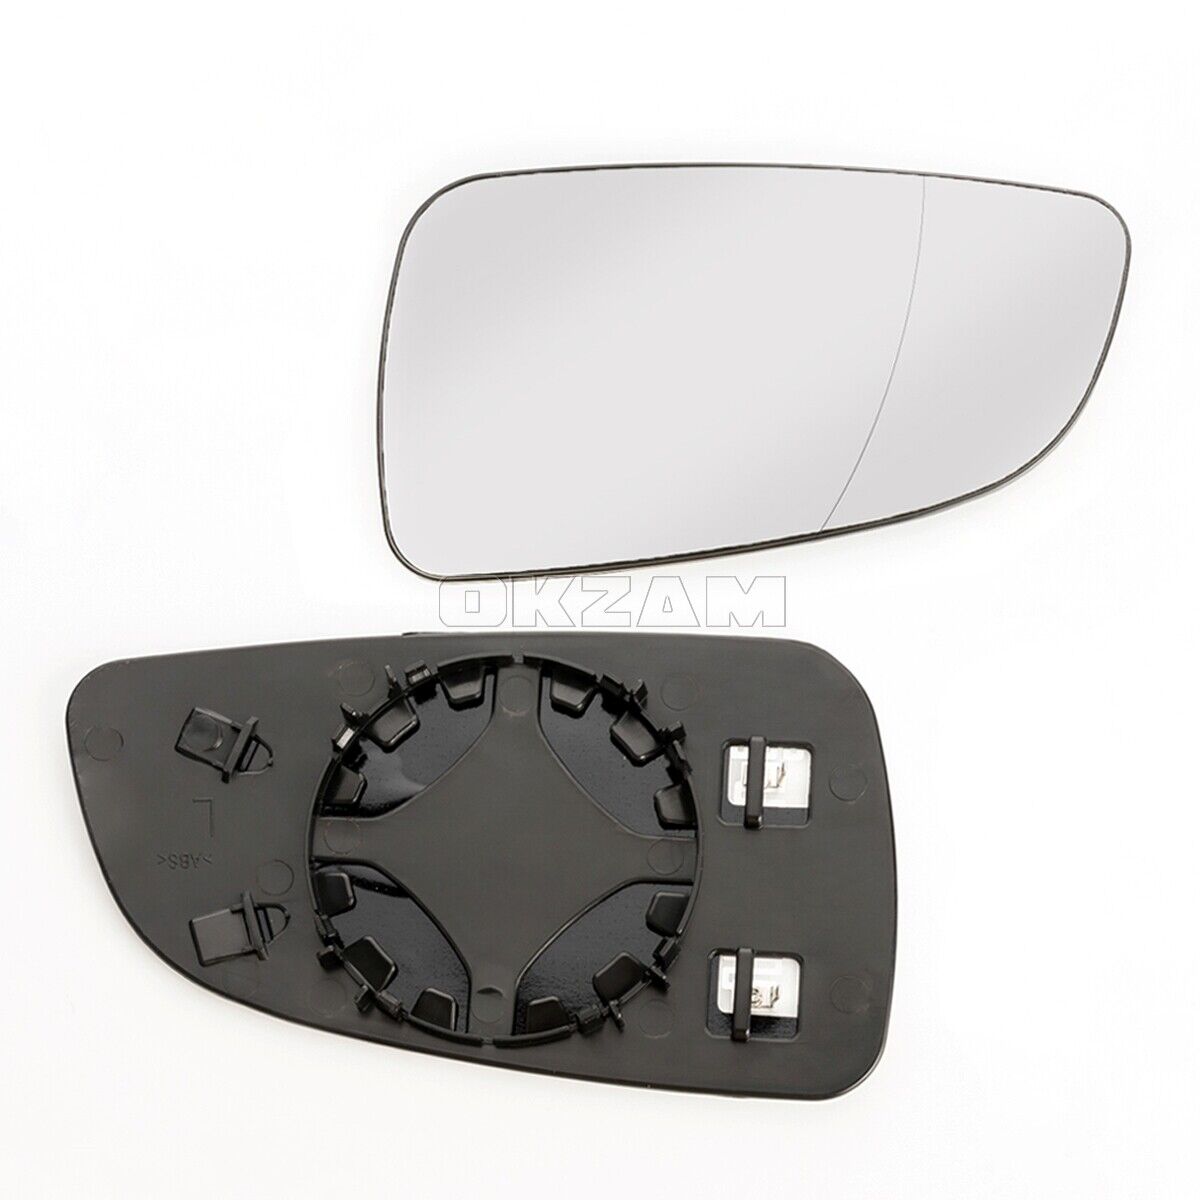 Aussenspiegel Spiegelglas asphärisch konvex elektrisch links für OPEL ASTRA  H